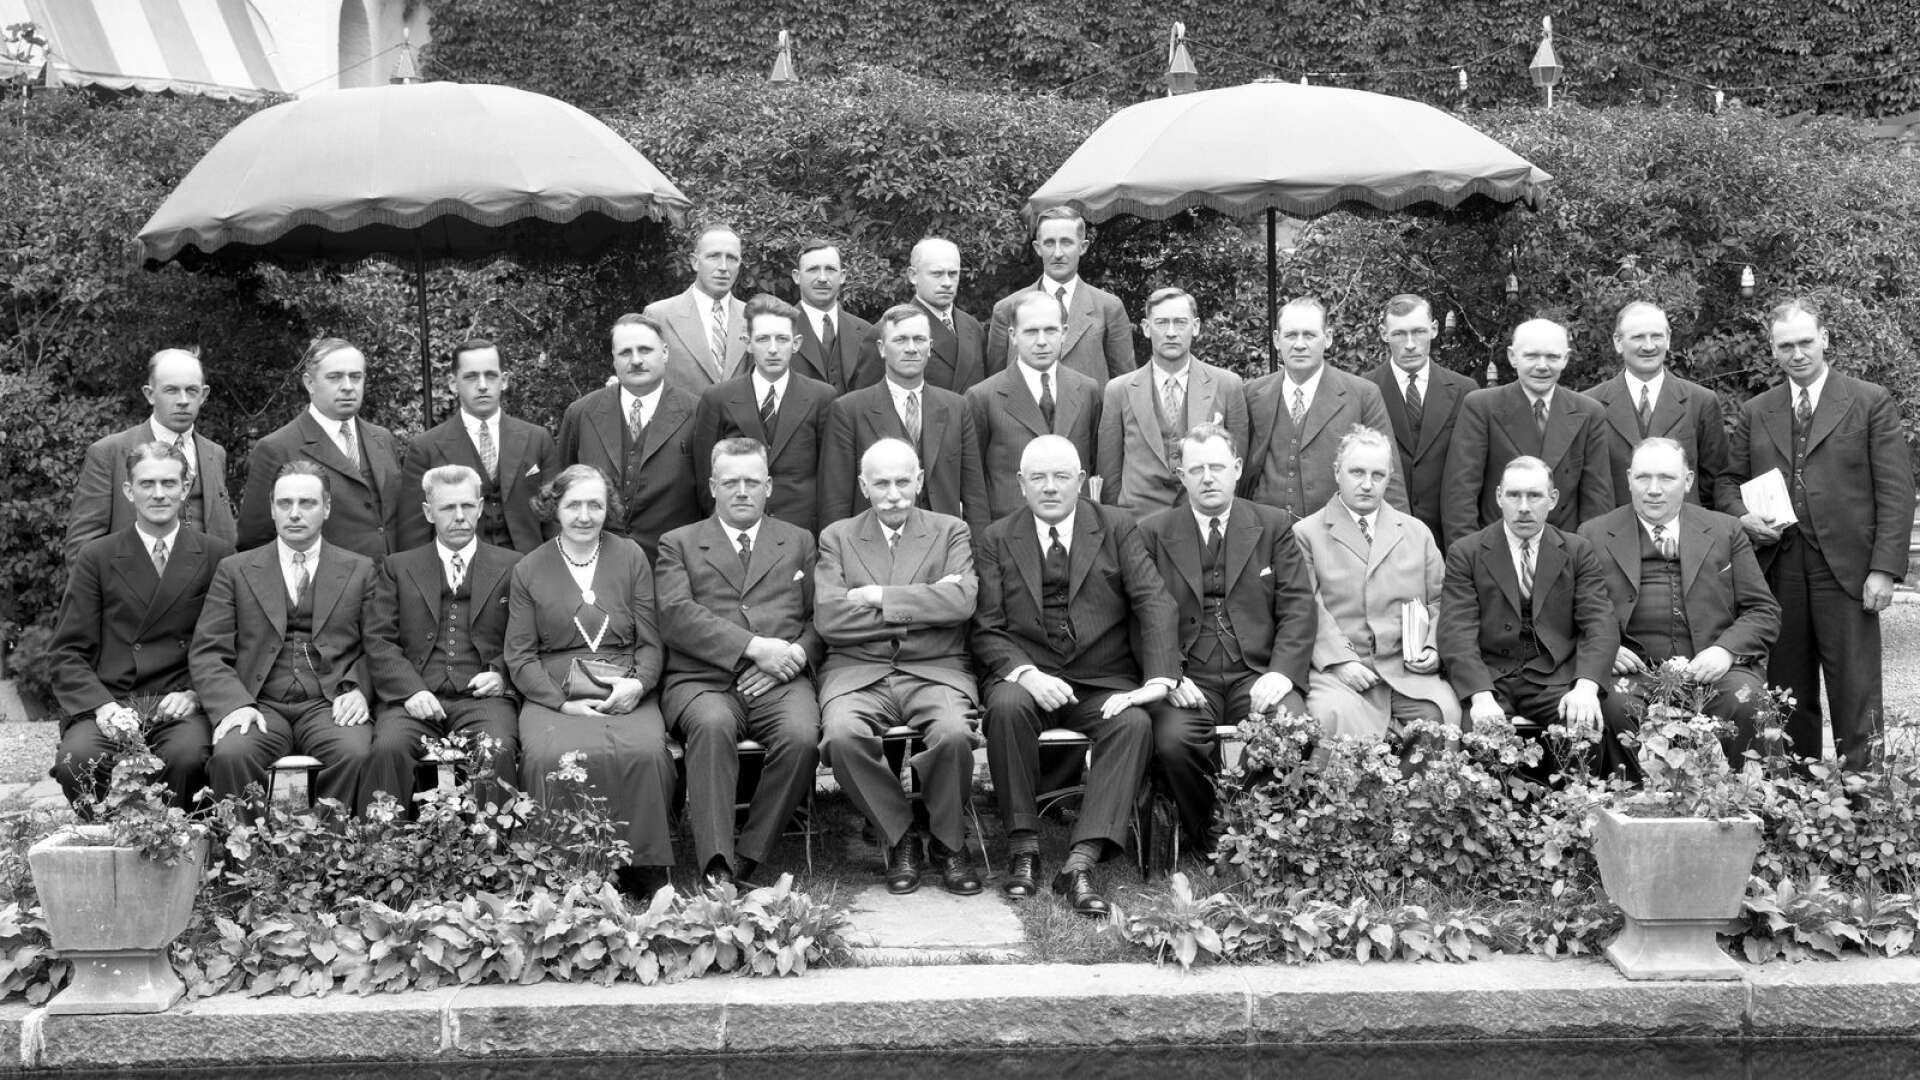 Mestadels kostymklädda ledamöter av landstingsfullmäktige år 1934, där endast en i samlingen var kvinna. Bilden är tagen nedanför Statts hotellterrass.